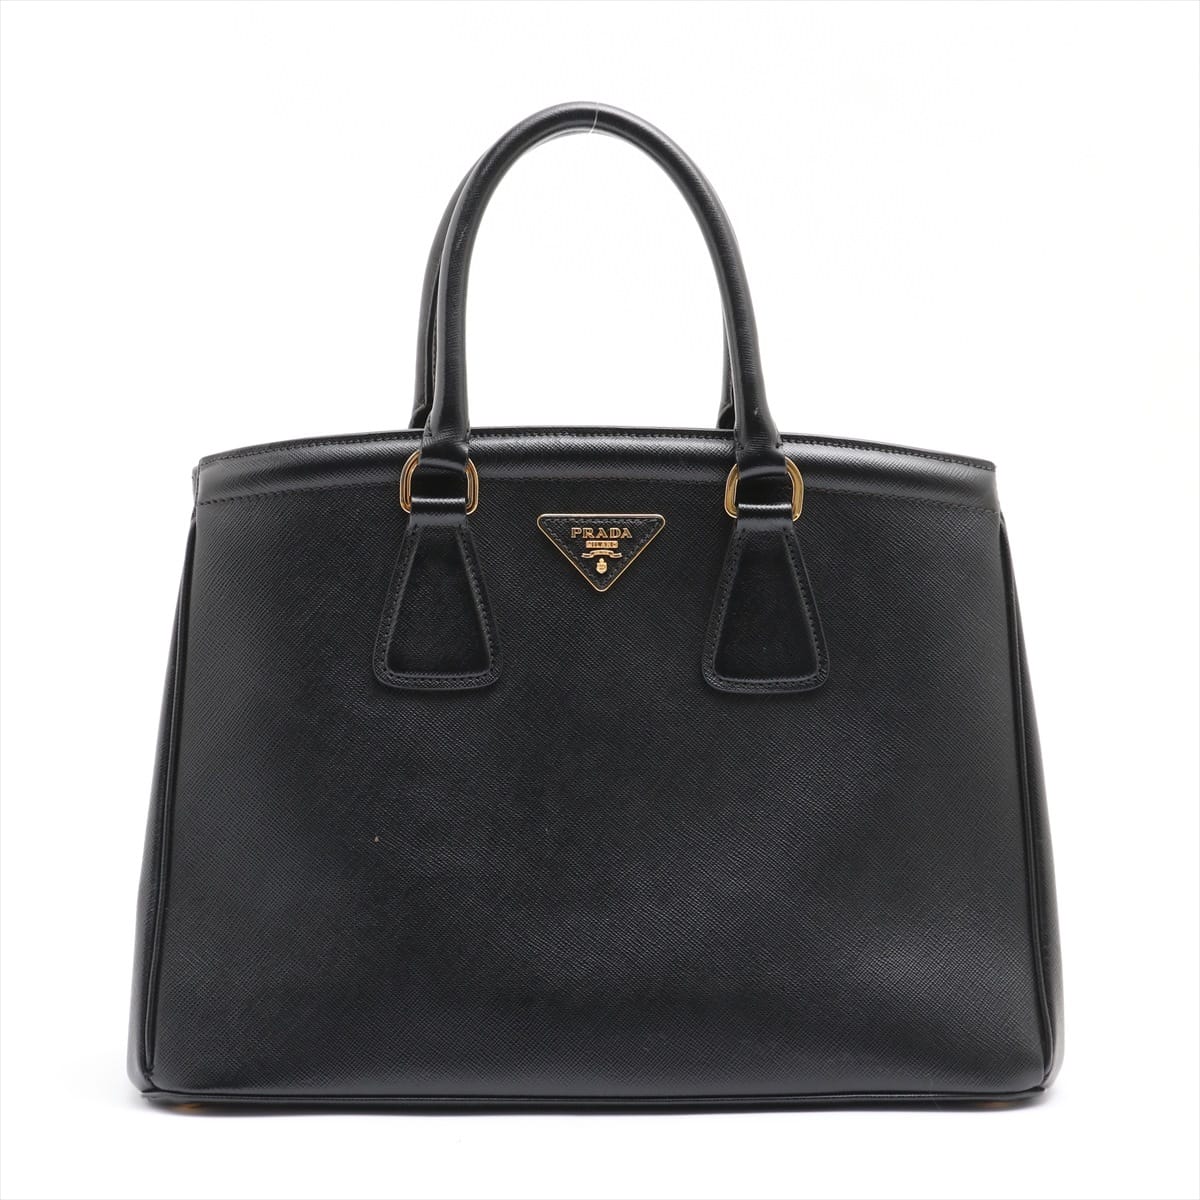 Prada Saffiano Leather Hand bag Black 1BA274